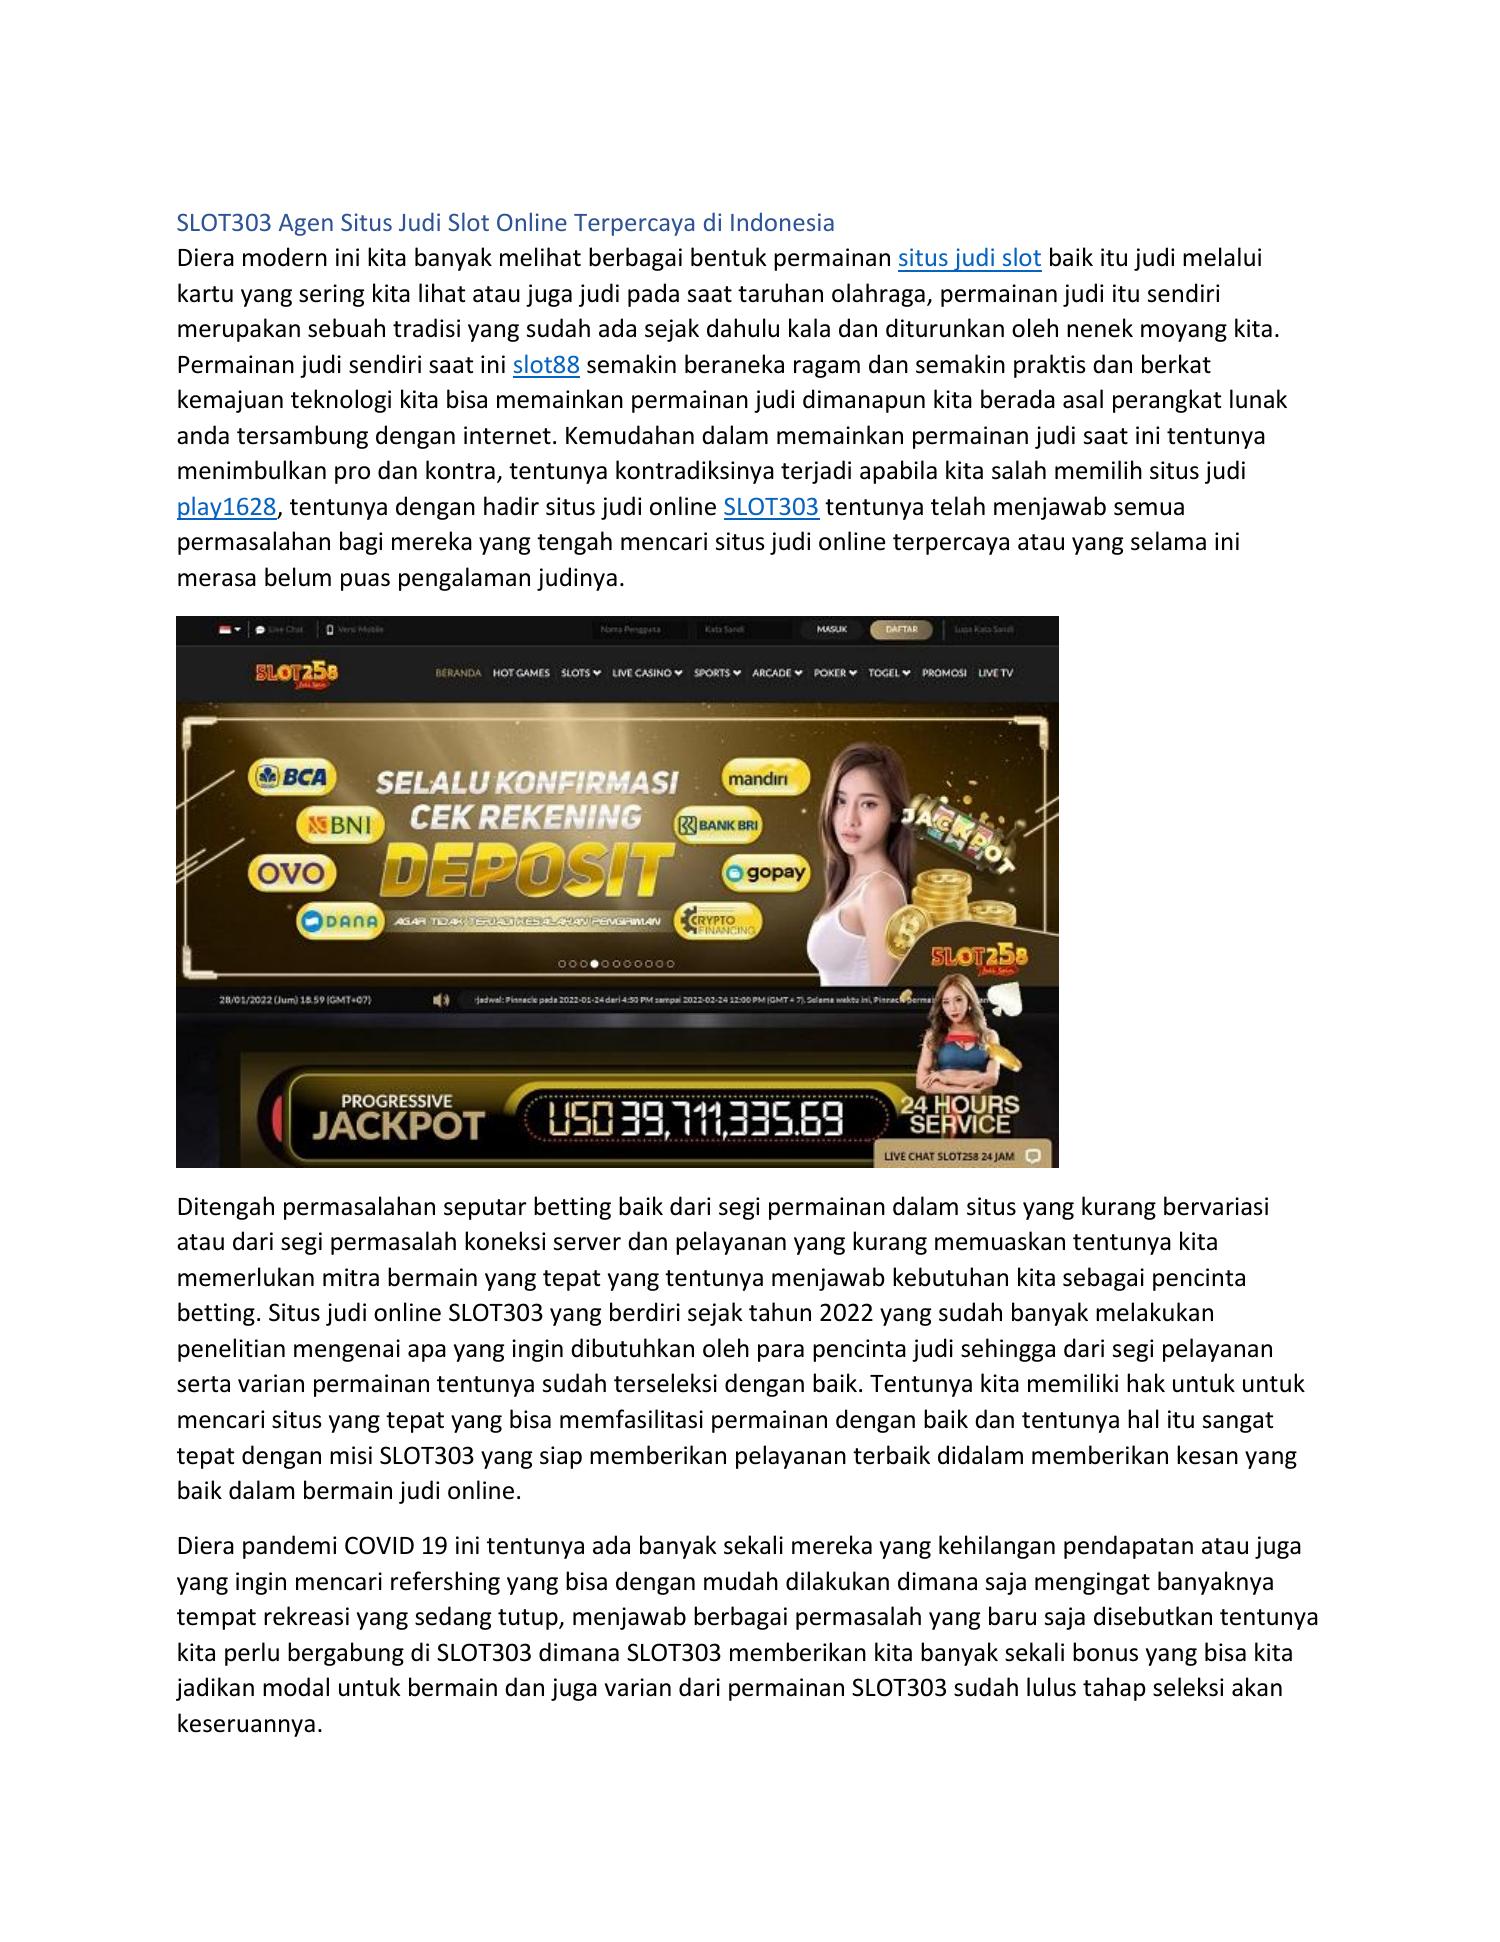 SLOT303 Agen Situs Judi Slot Online Terpercaya di Indonesia.pdf | DocDroid